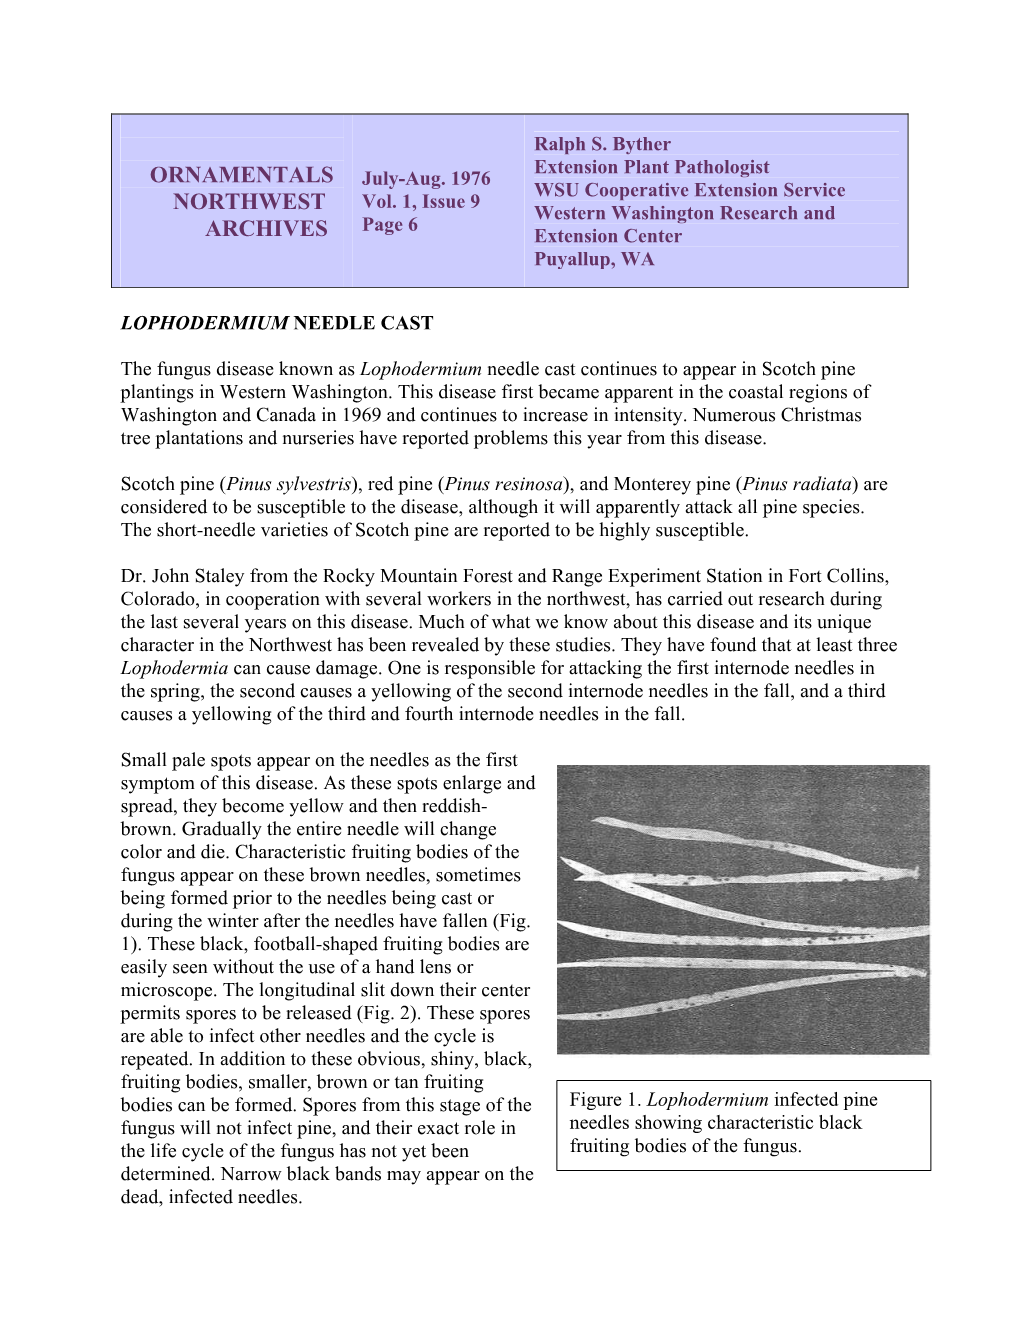 Lophodermium Needle Cast, Vol.1, Issue 9